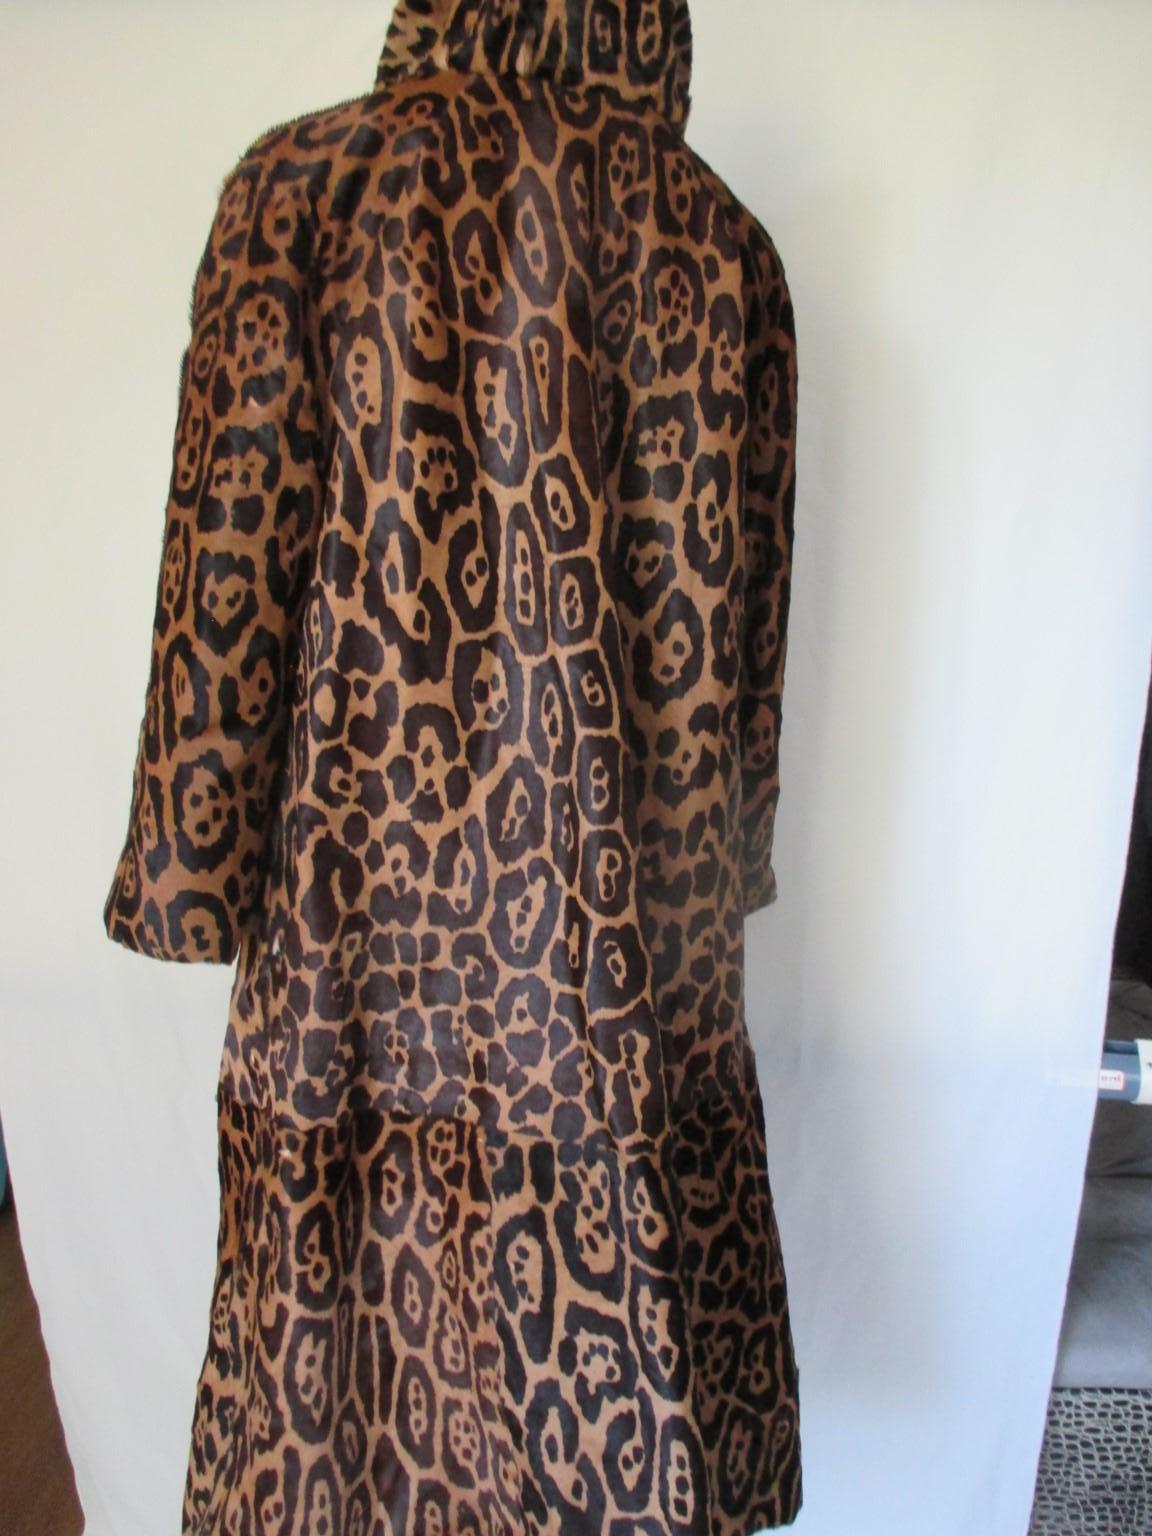 Dieser seltene Vintage-Mantel ist aus gefärbtem, bedrucktem Ponyhaarpelz mit Leopardenmuster gefertigt.

Wir bieten weitere exklusive Pelzartikel an, siehe unseren Frontstore.

Einzelheiten:
Umkehrbar 
Schwarzes Futter
Keine Verschlusshaken/Knöpfe,